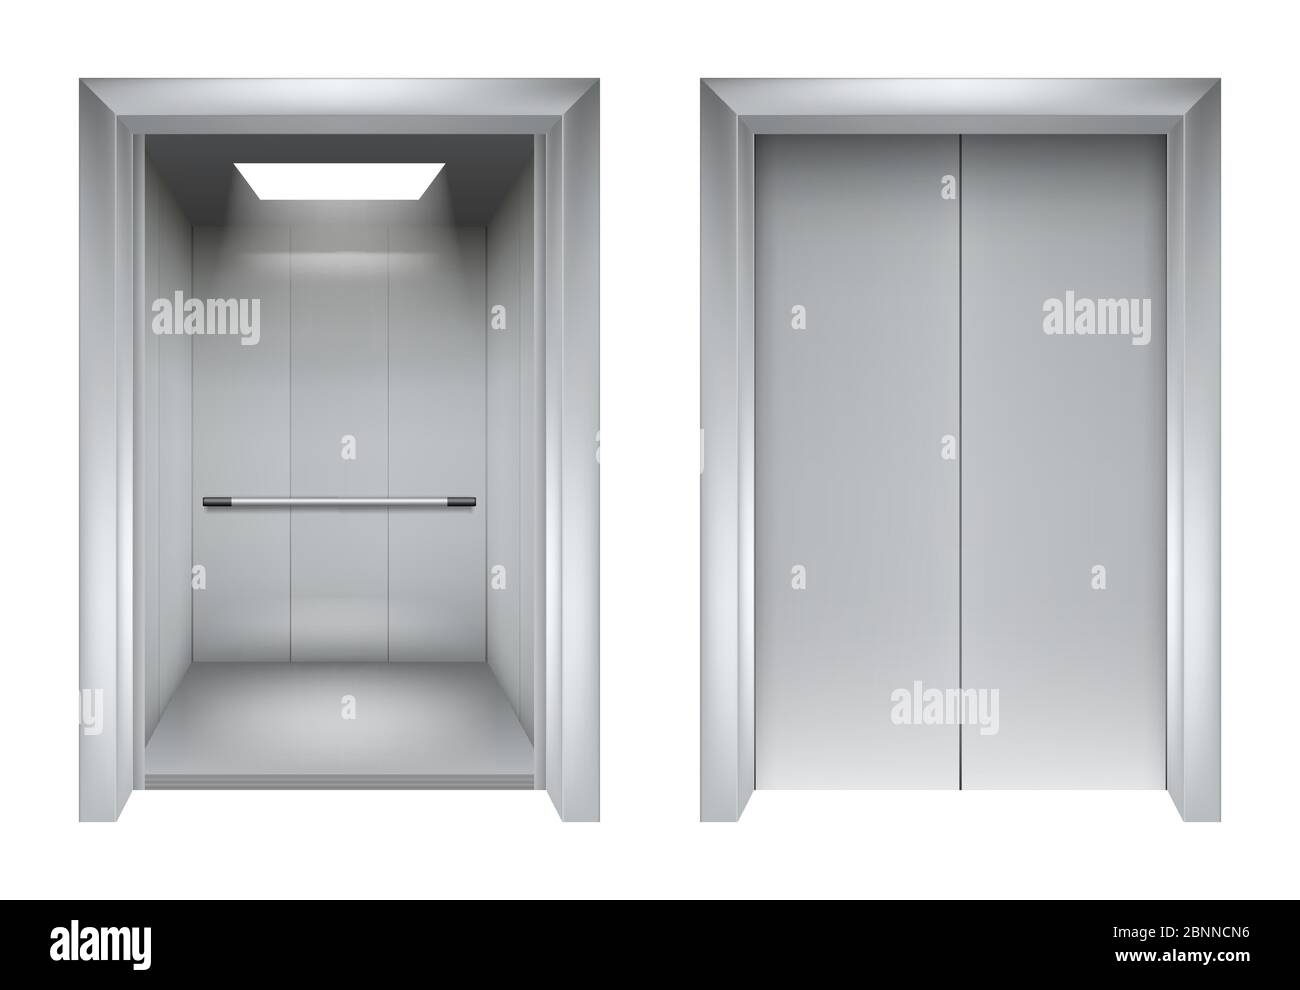 Fahrstuhltüren. Schließen und Öffnen Aufzug metallic in Bürogebäude Vektor realistische 3d-Bilder Stock Vektor